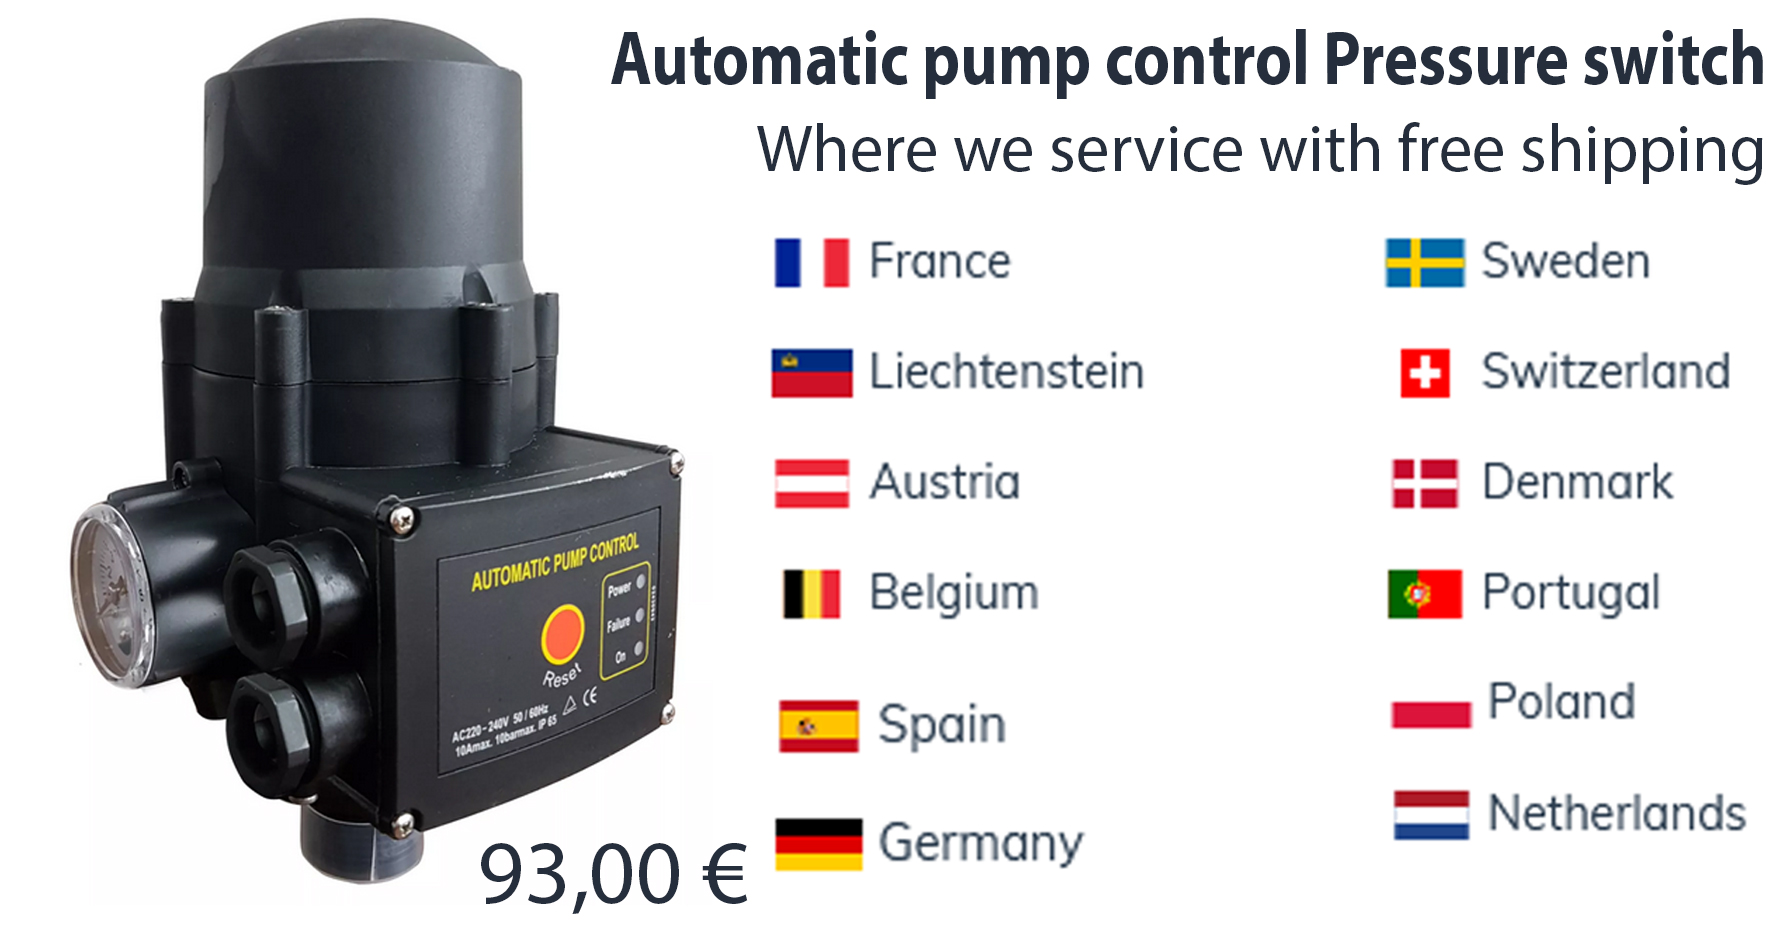 Automatic pump control Pressure switch